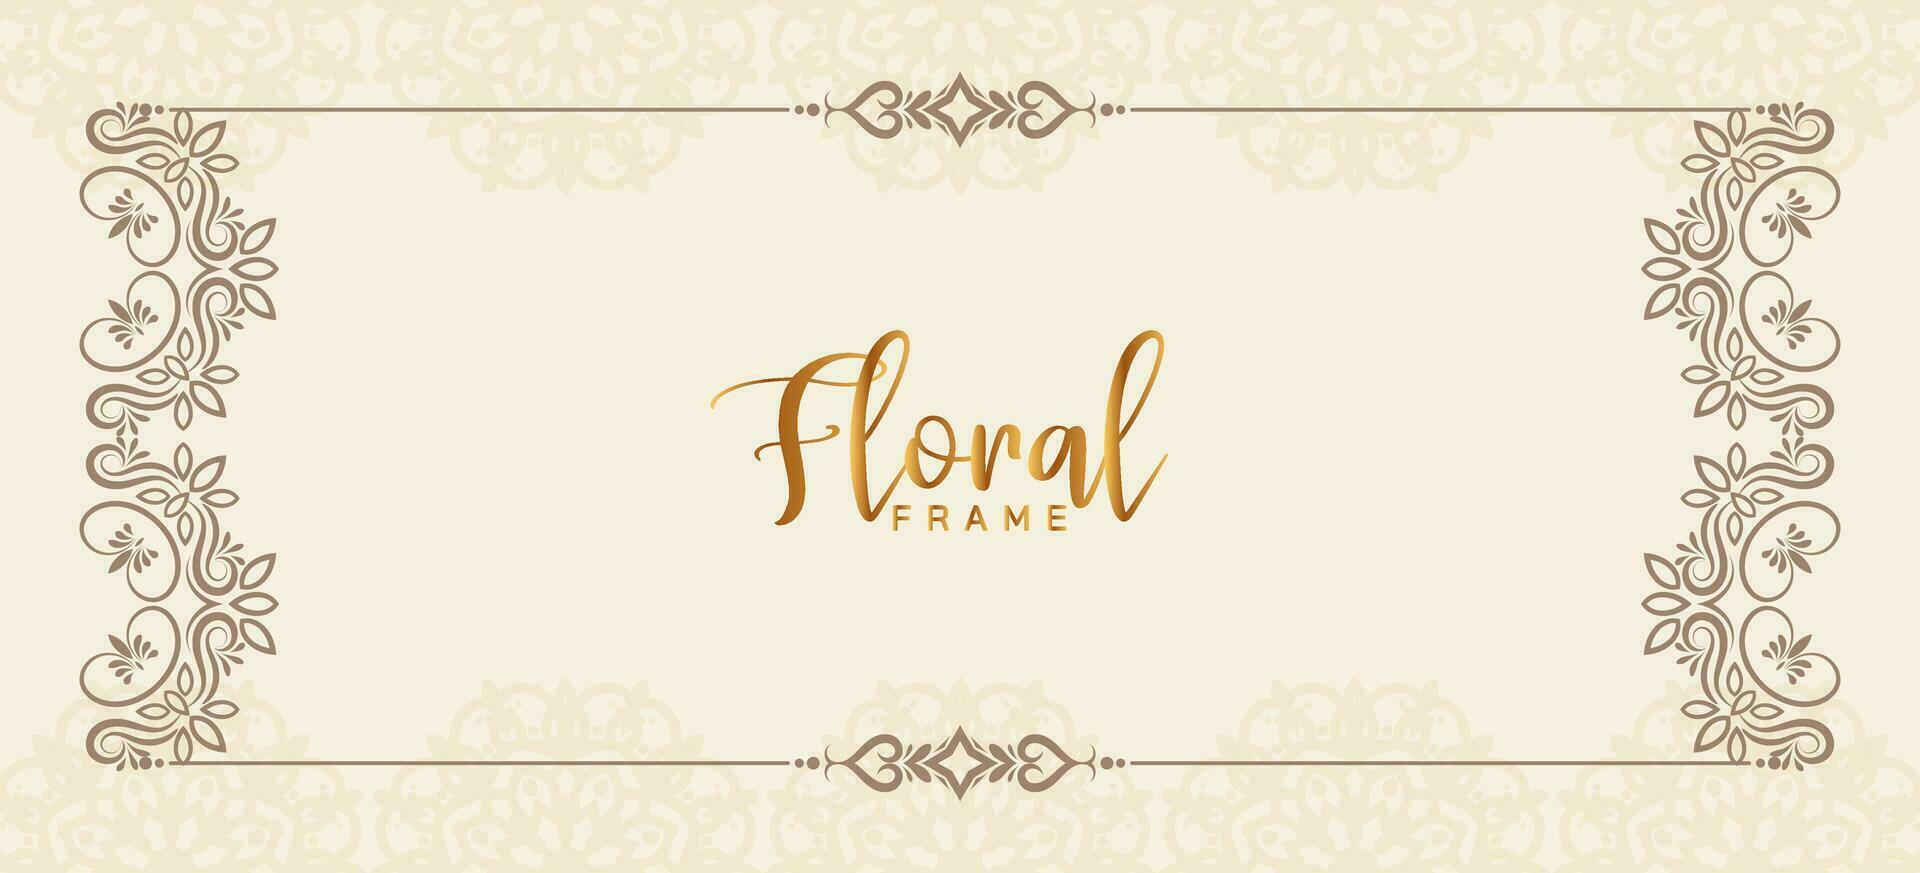 Elegant decorative floral frame stylish decor banner design vector